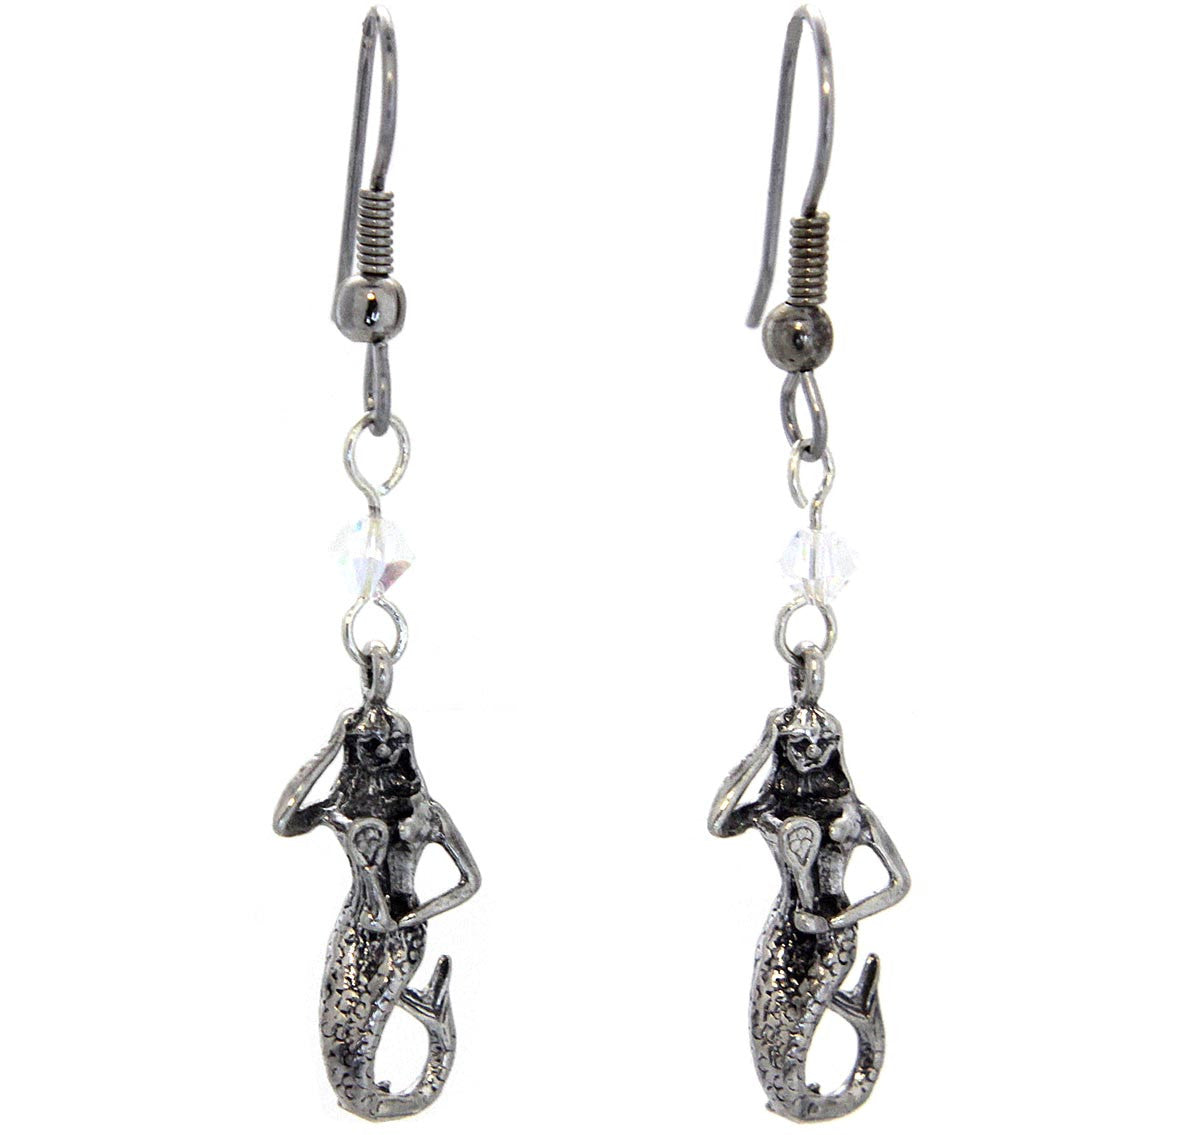 Mermaid Earrings Sterling Silver Charms